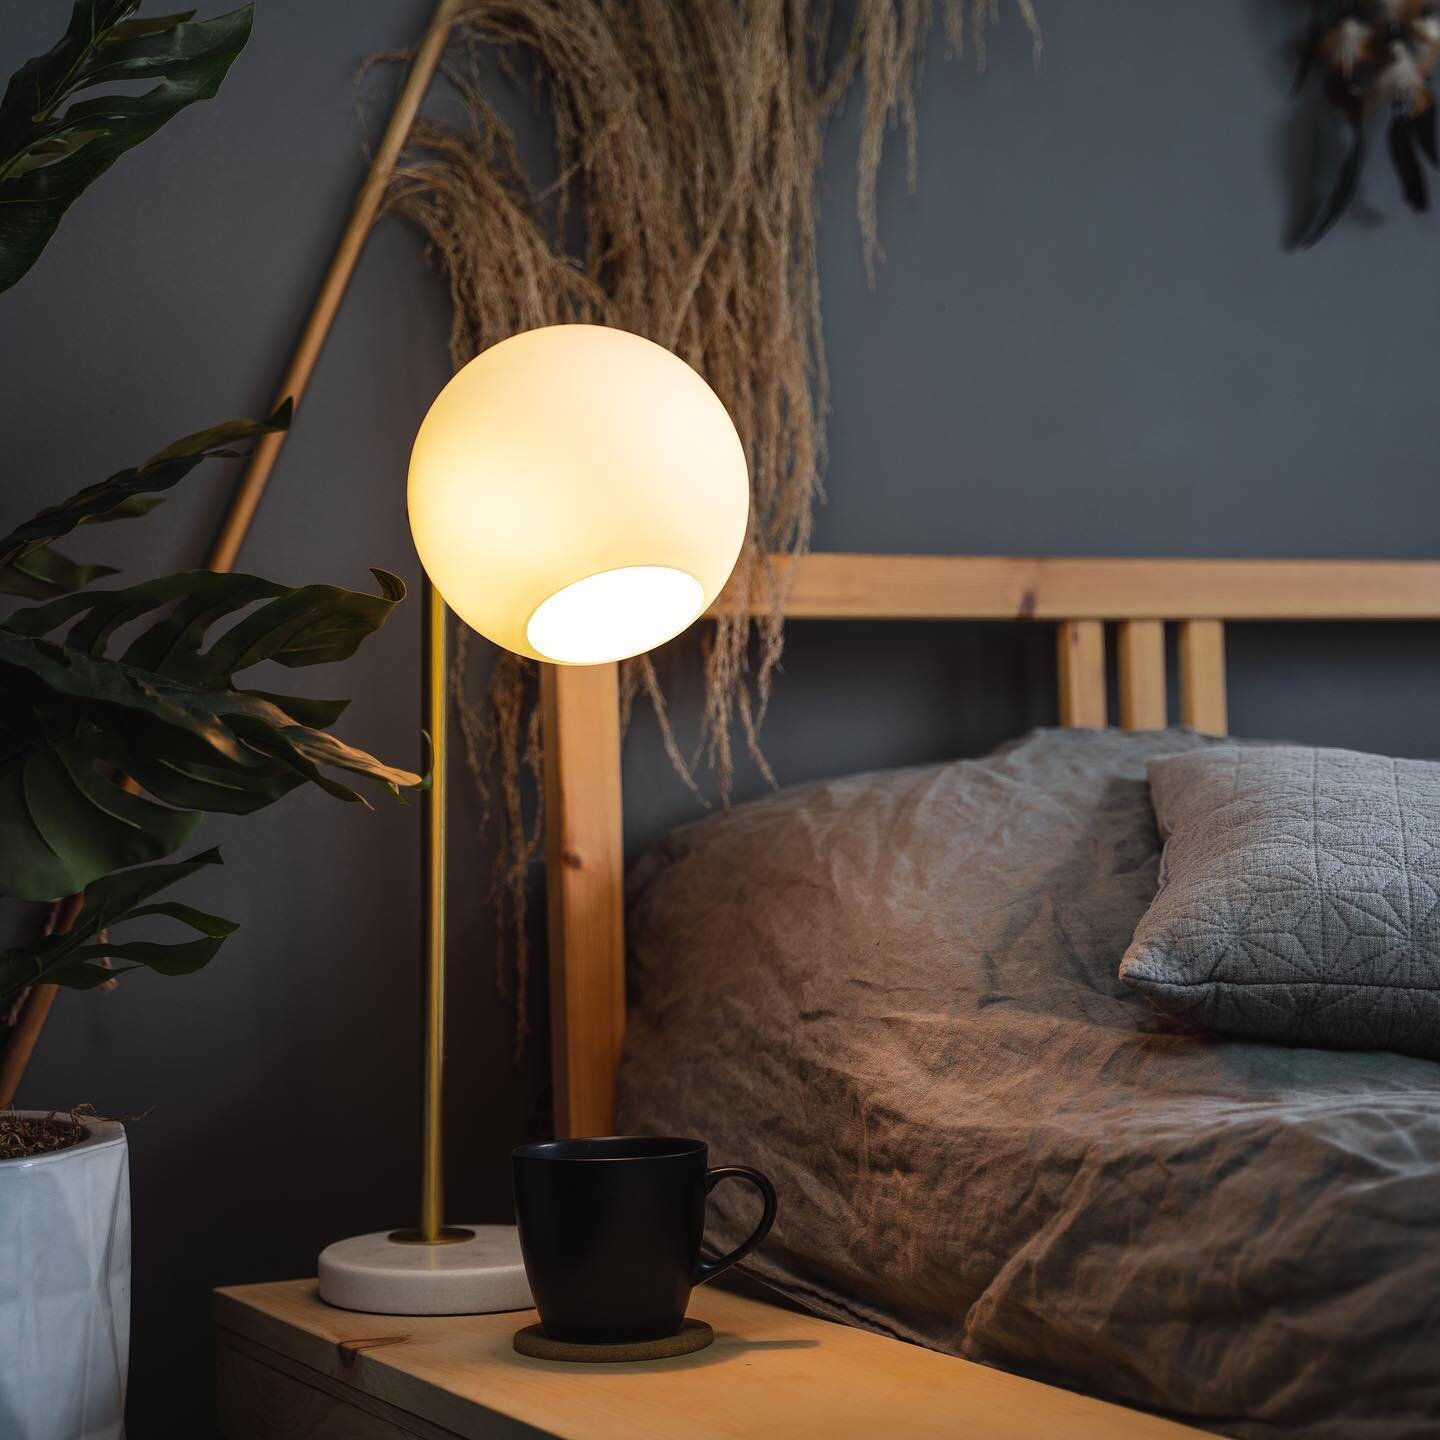 Bedtime Bulb | The Light Bulb for Healthy Sleep